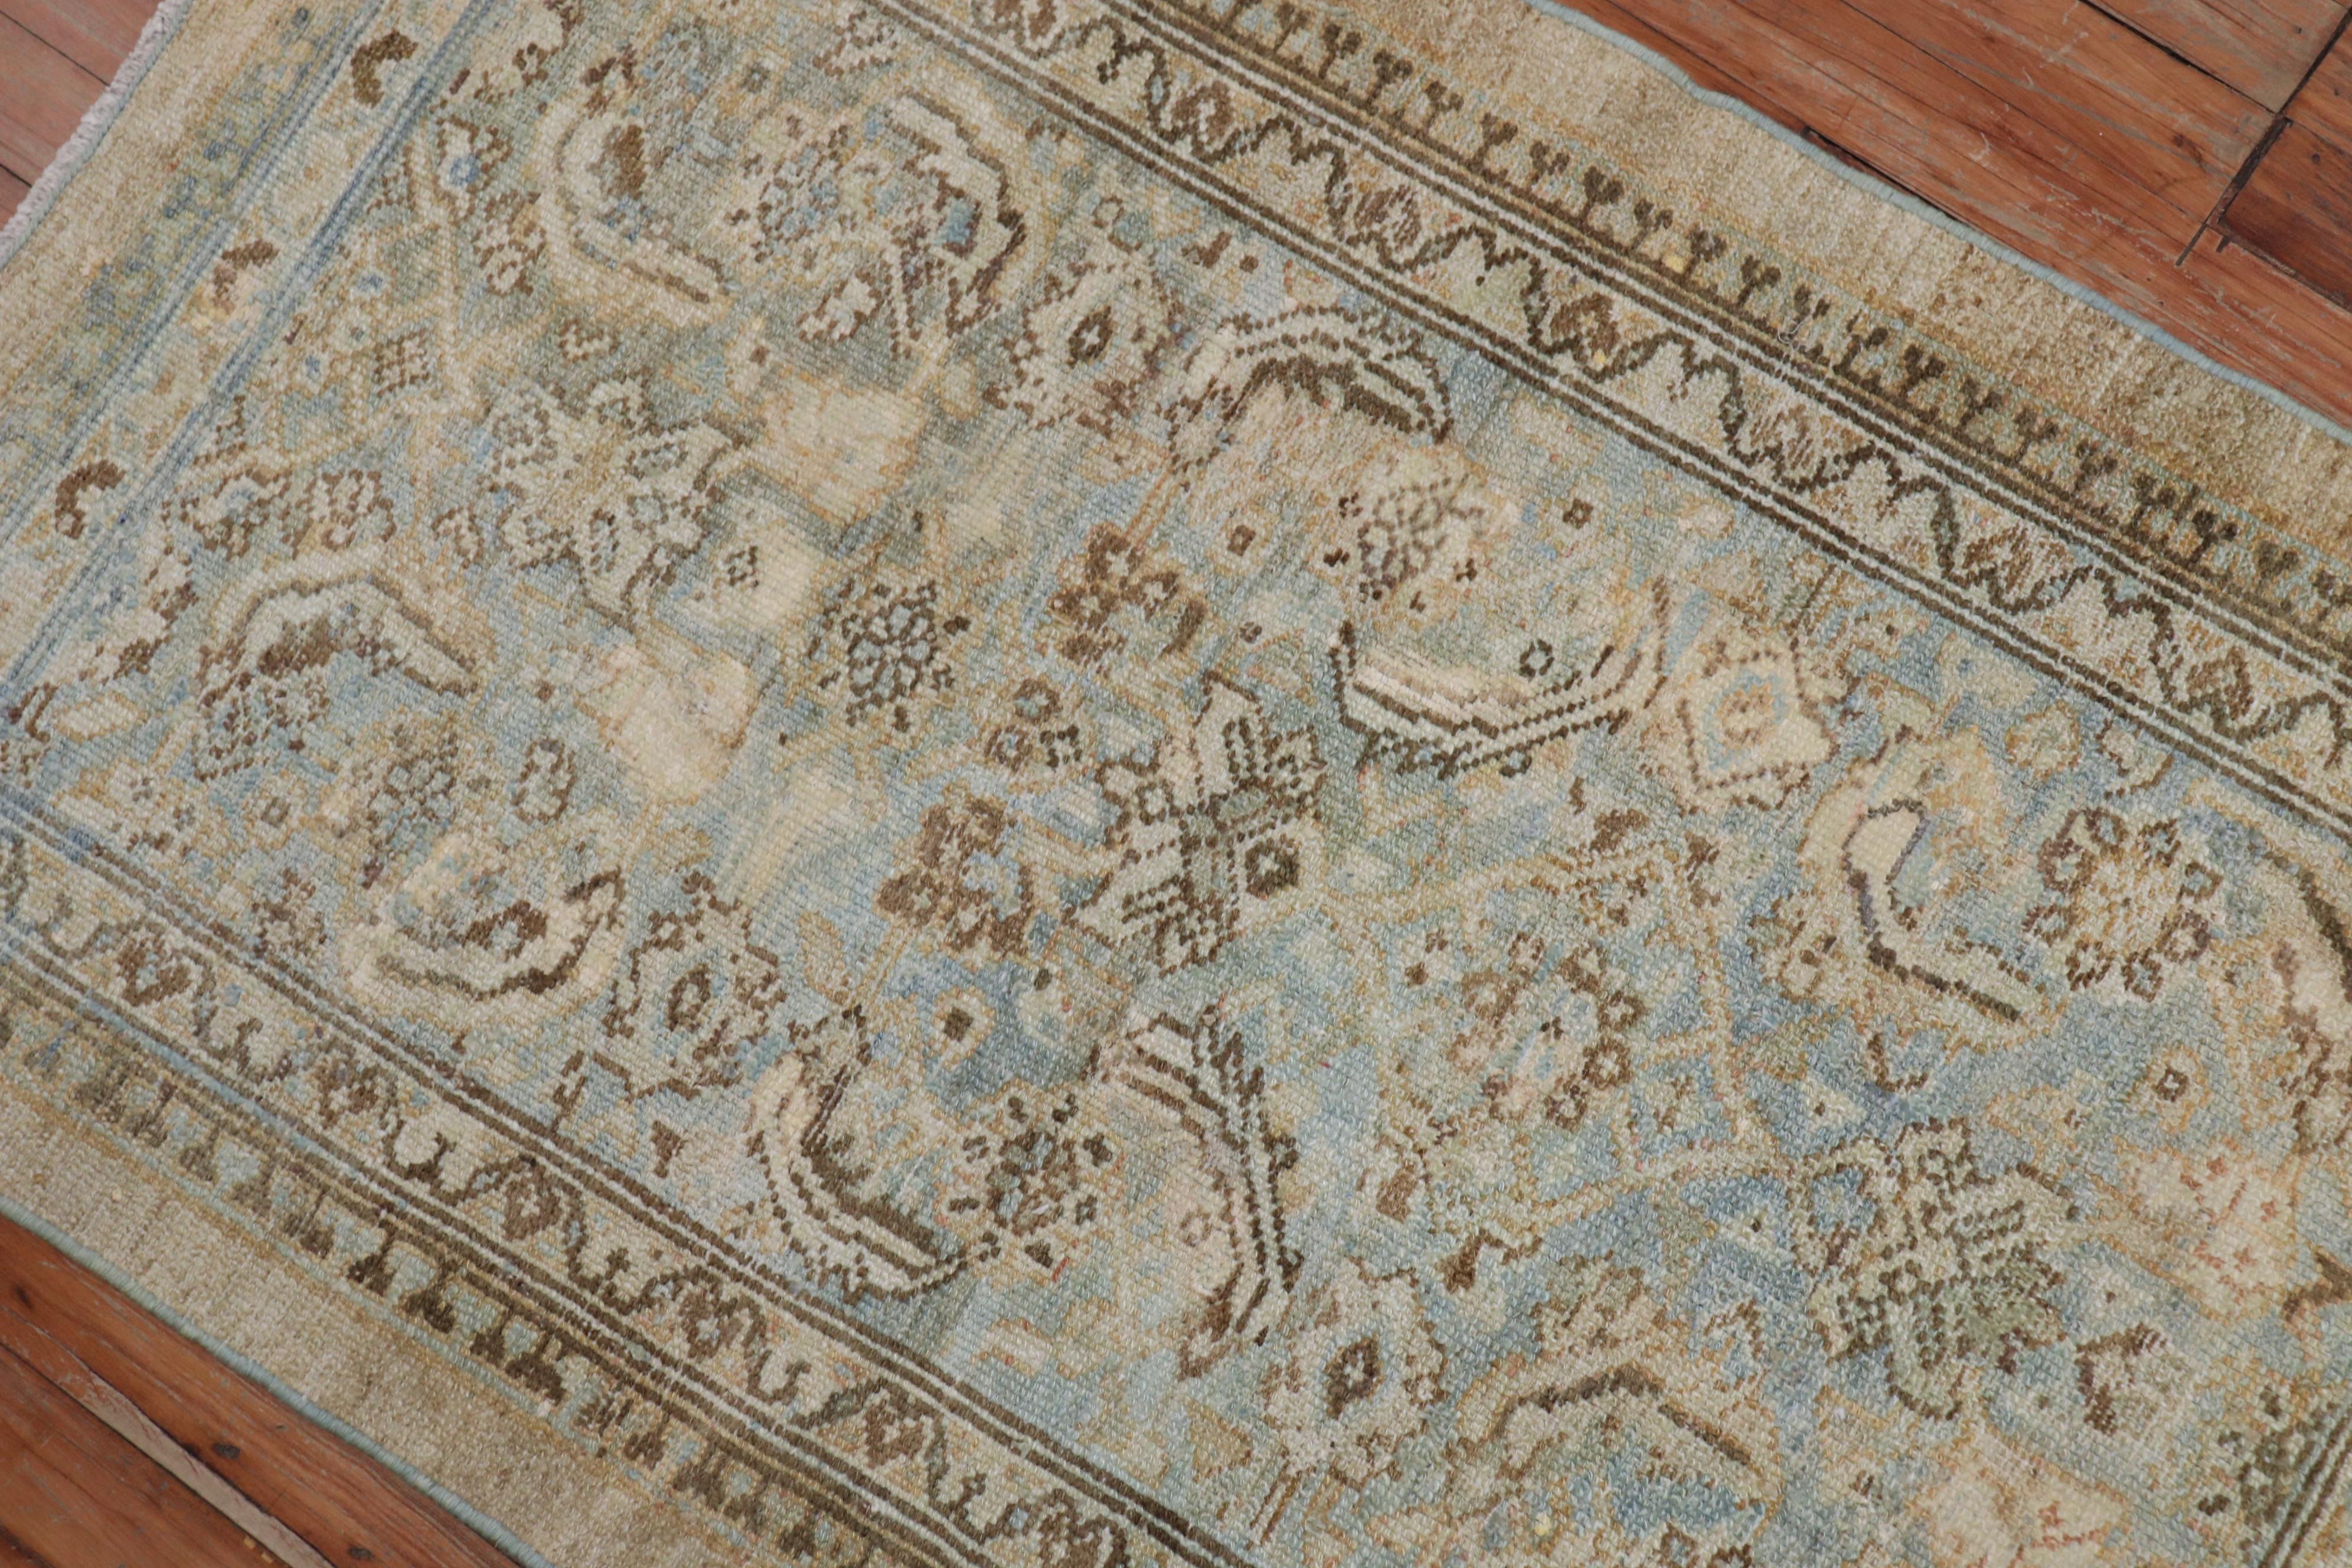 Tapis persan traditionnel Serab du début du XXe siècle, bleu poudre et accents camel.

Mesures : 2'7